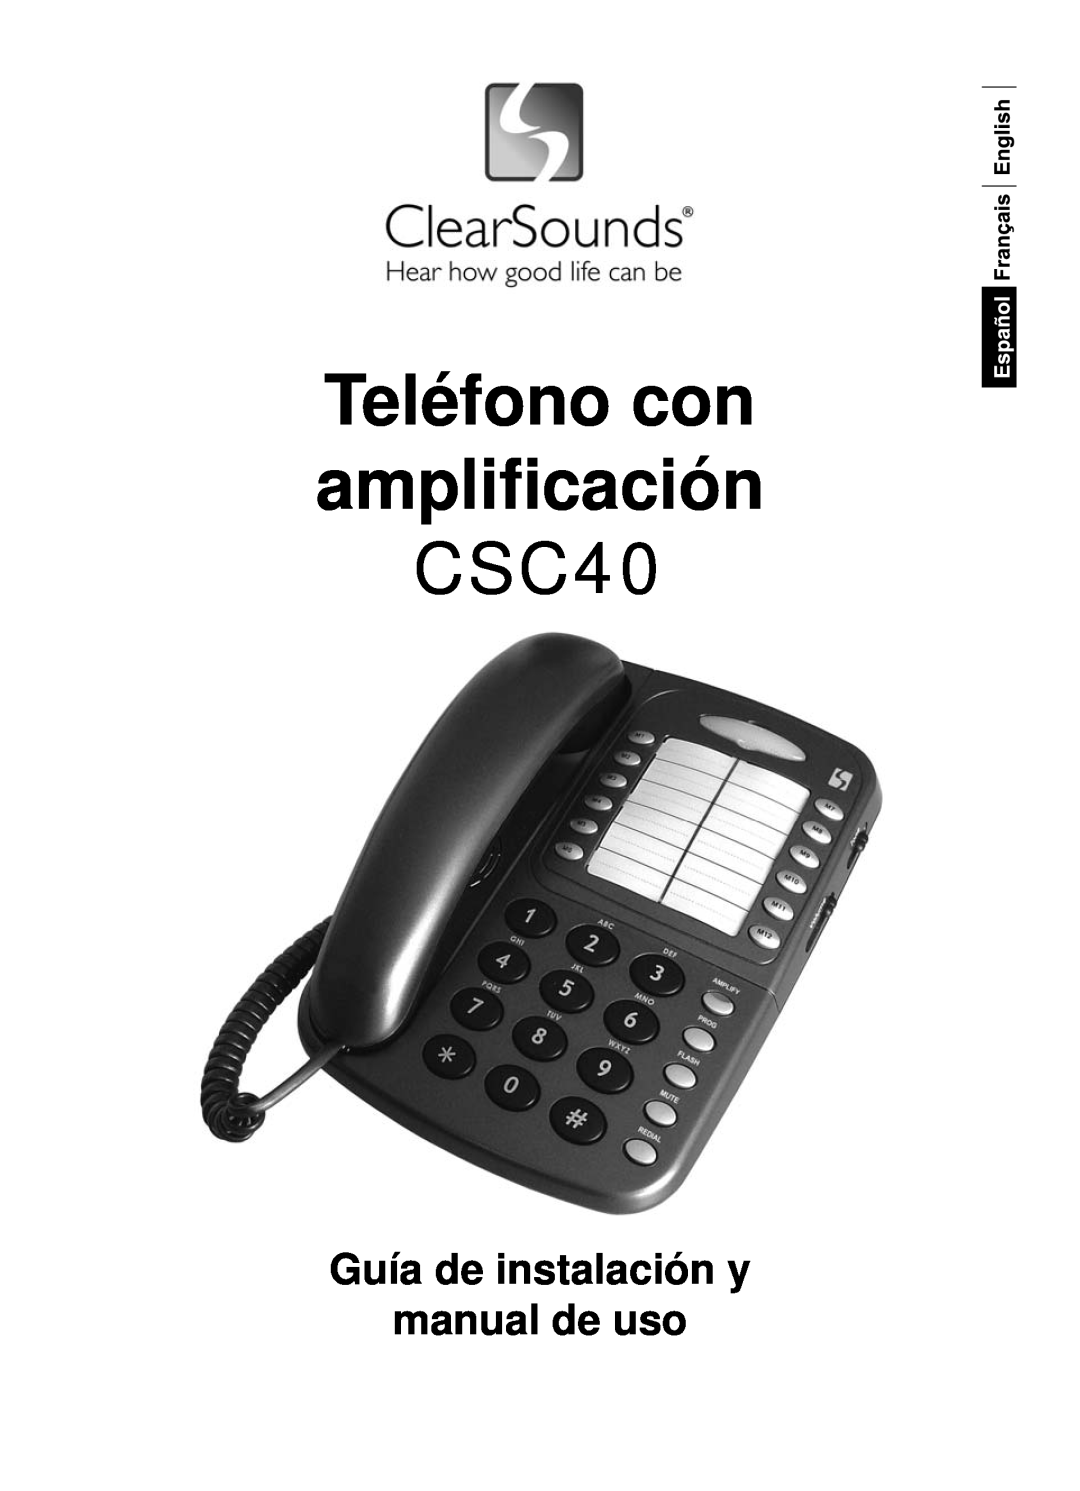 ClearSounds user manual Teléfono con ampliﬁcación CSC40, Guía de instalación y manual de uso 